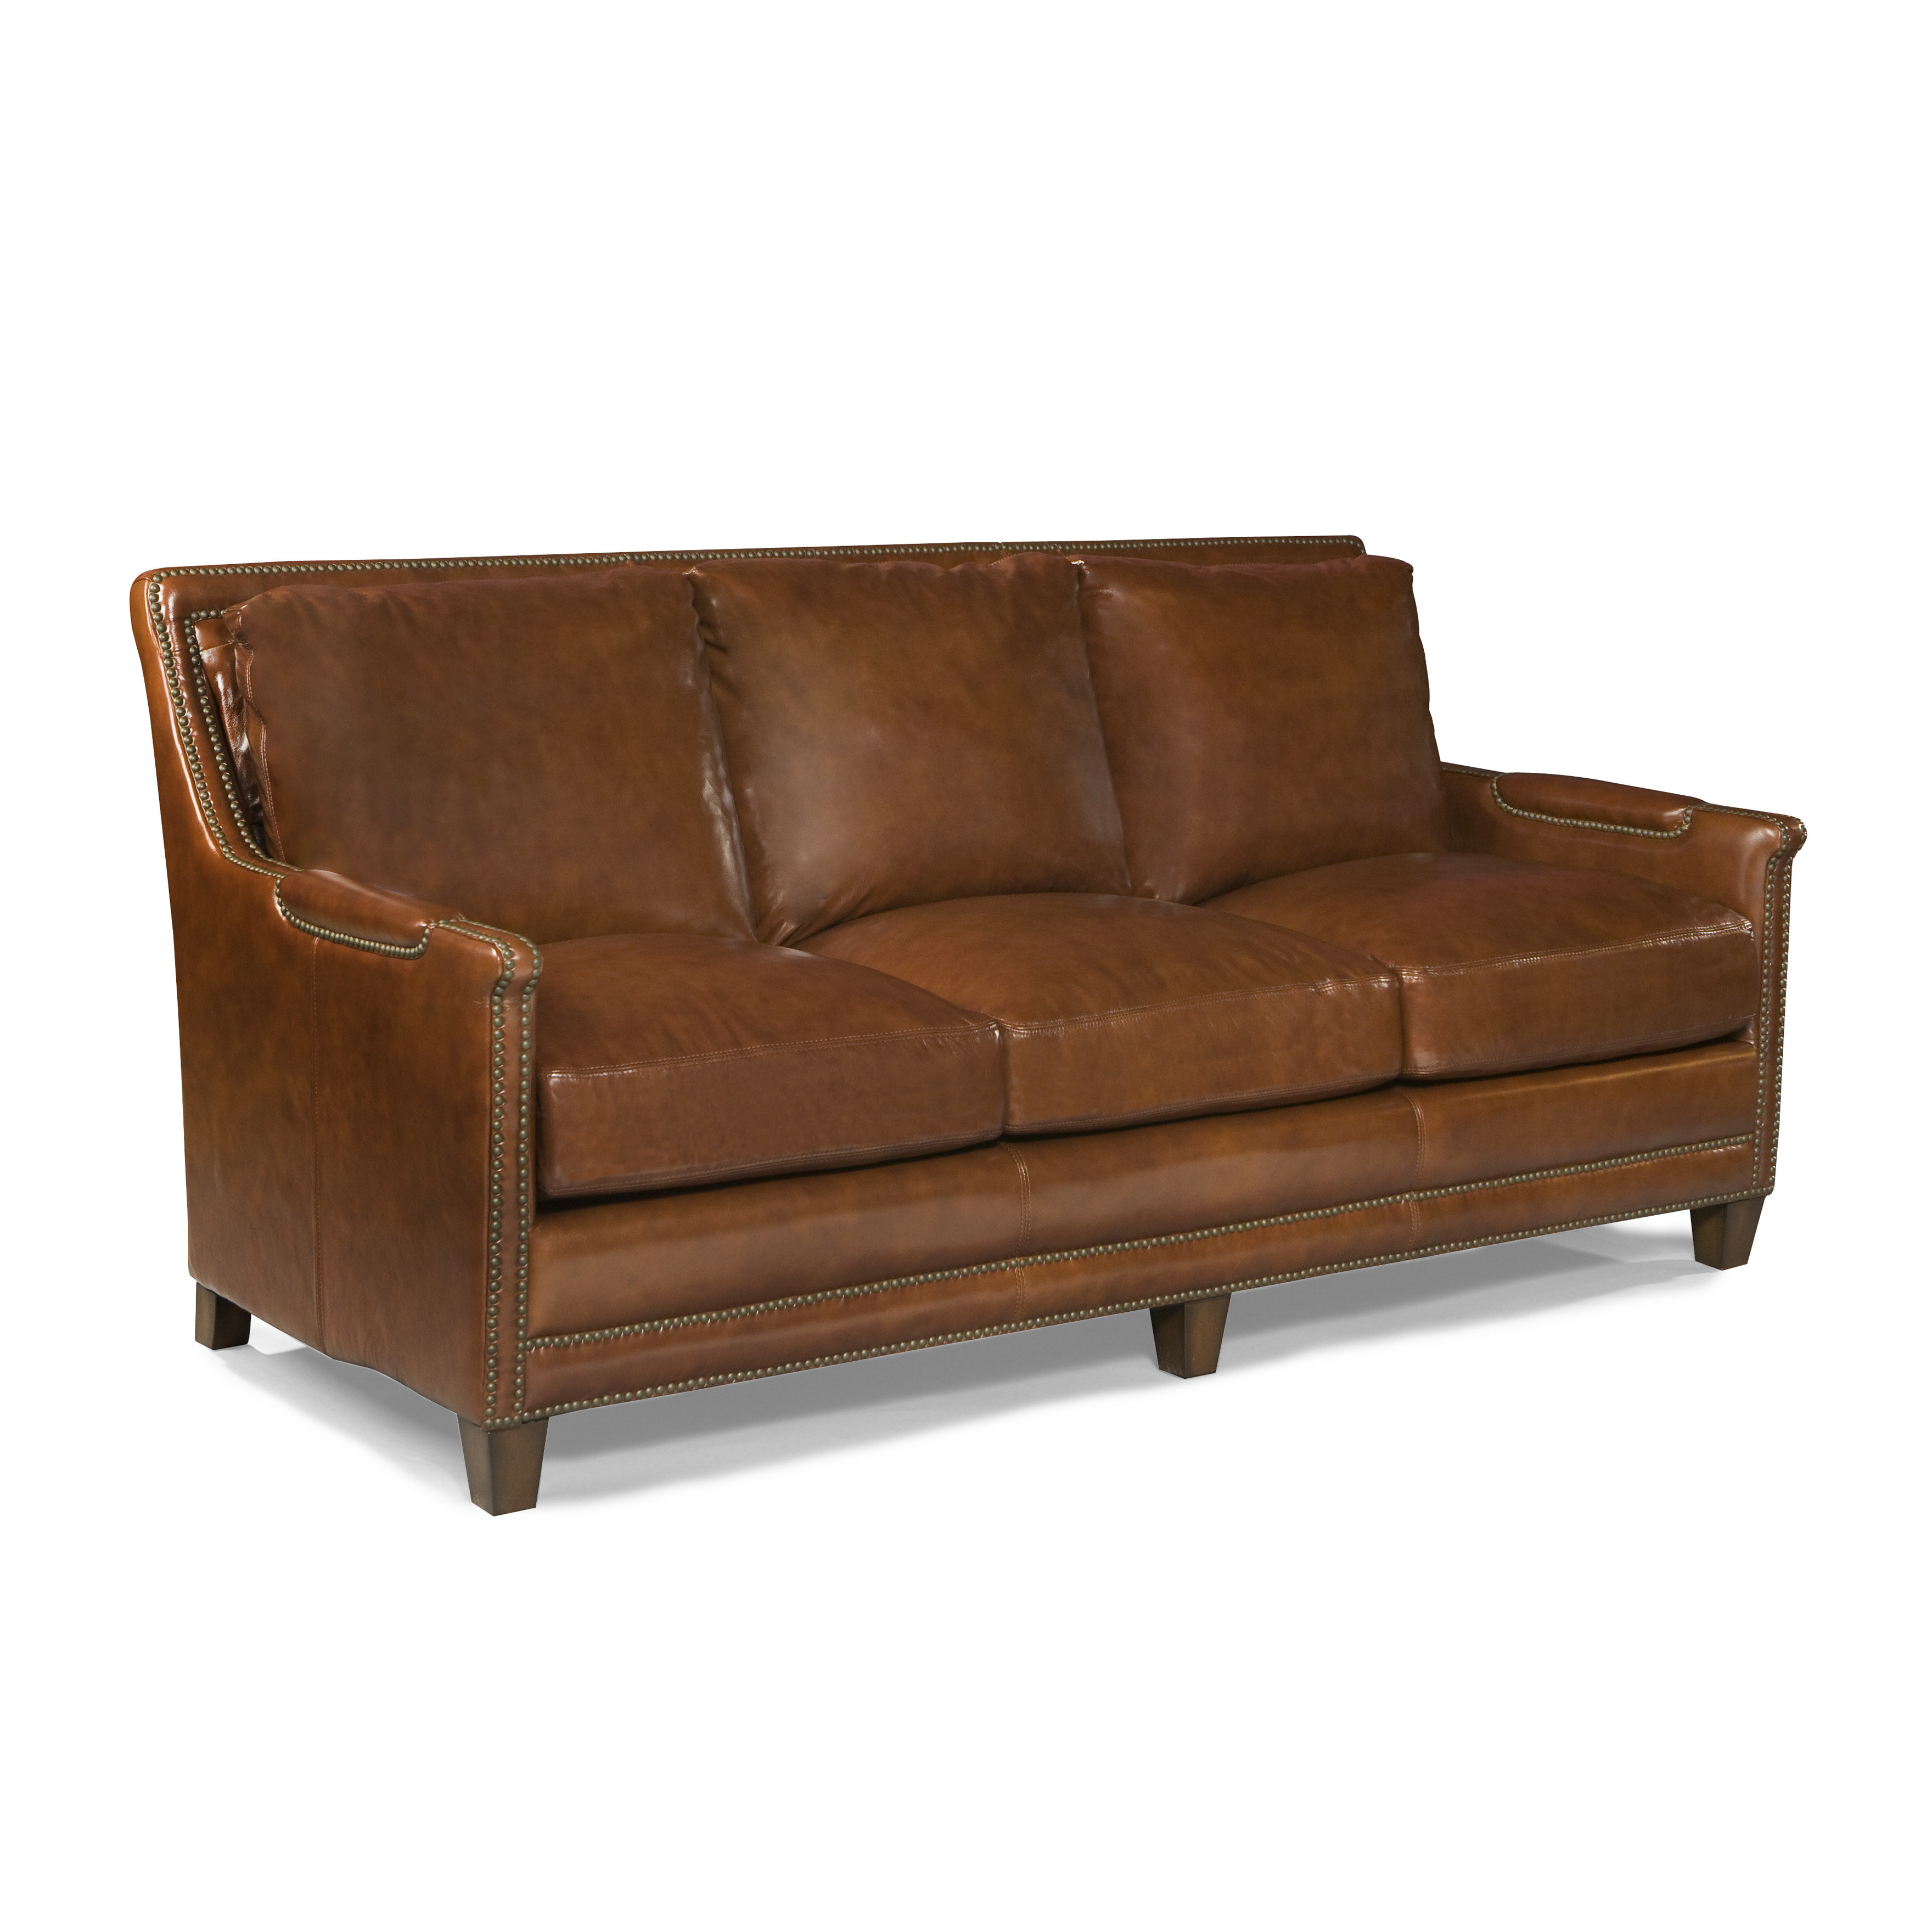 Palatial Furniture Prescott Leather Sofa Reviews Wayfair